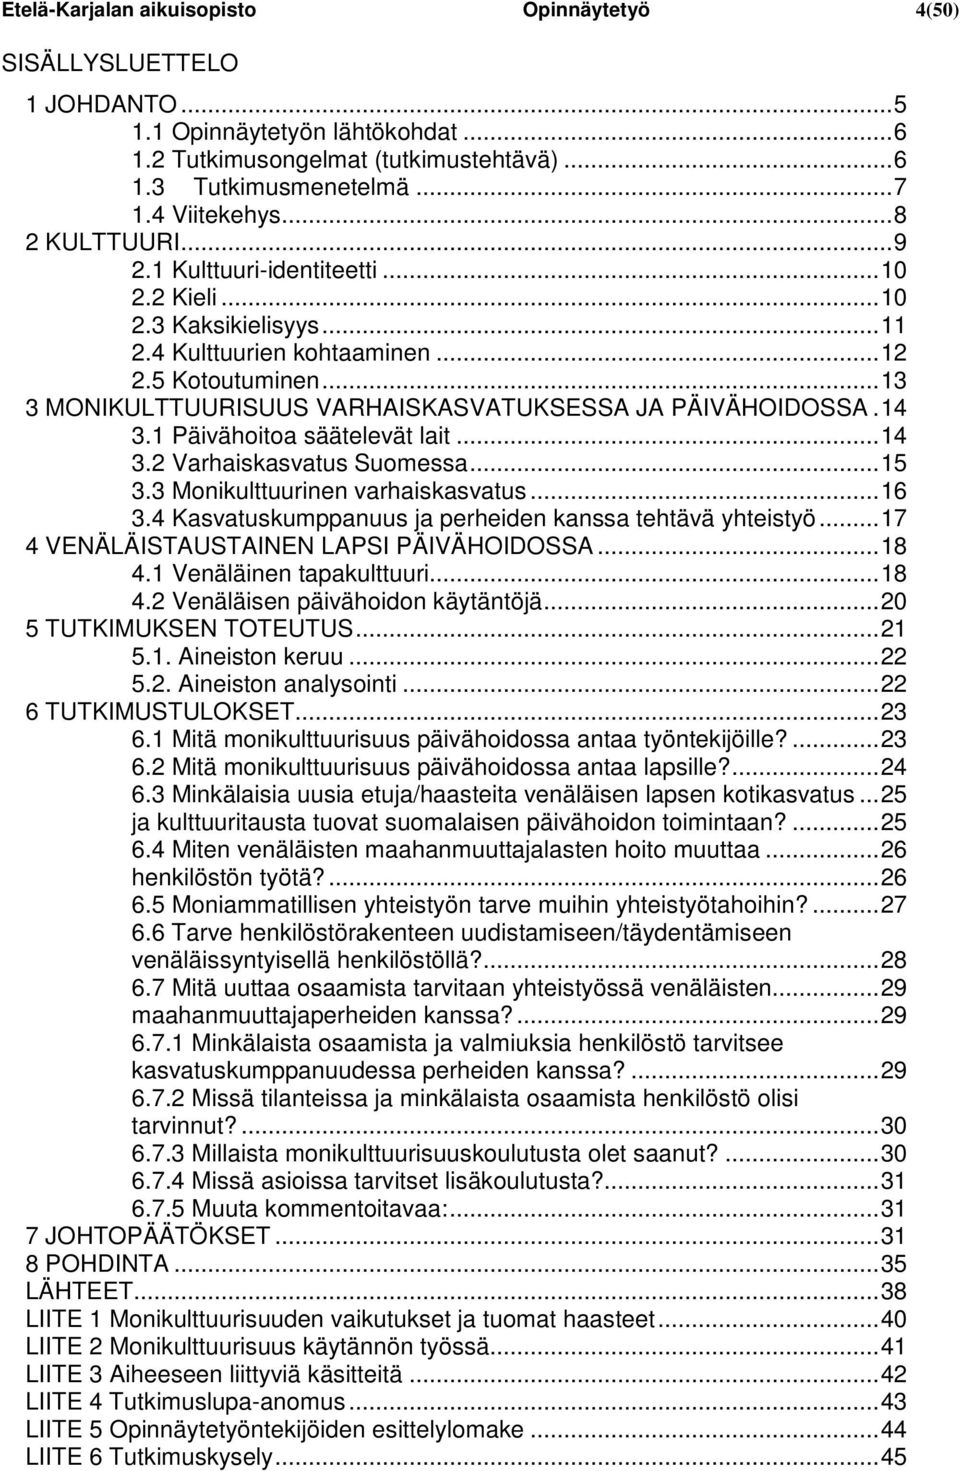 .. 13 3 MONIKULTTUURISUUS VARHAISKASVATUKSESSA JA PÄIVÄHOIDOSSA. 14 3.1 Päivähoitoa säätelevät lait... 14 3.2 Varhaiskasvatus Suomessa... 15 3.3 Monikulttuurinen varhaiskasvatus... 16 3.